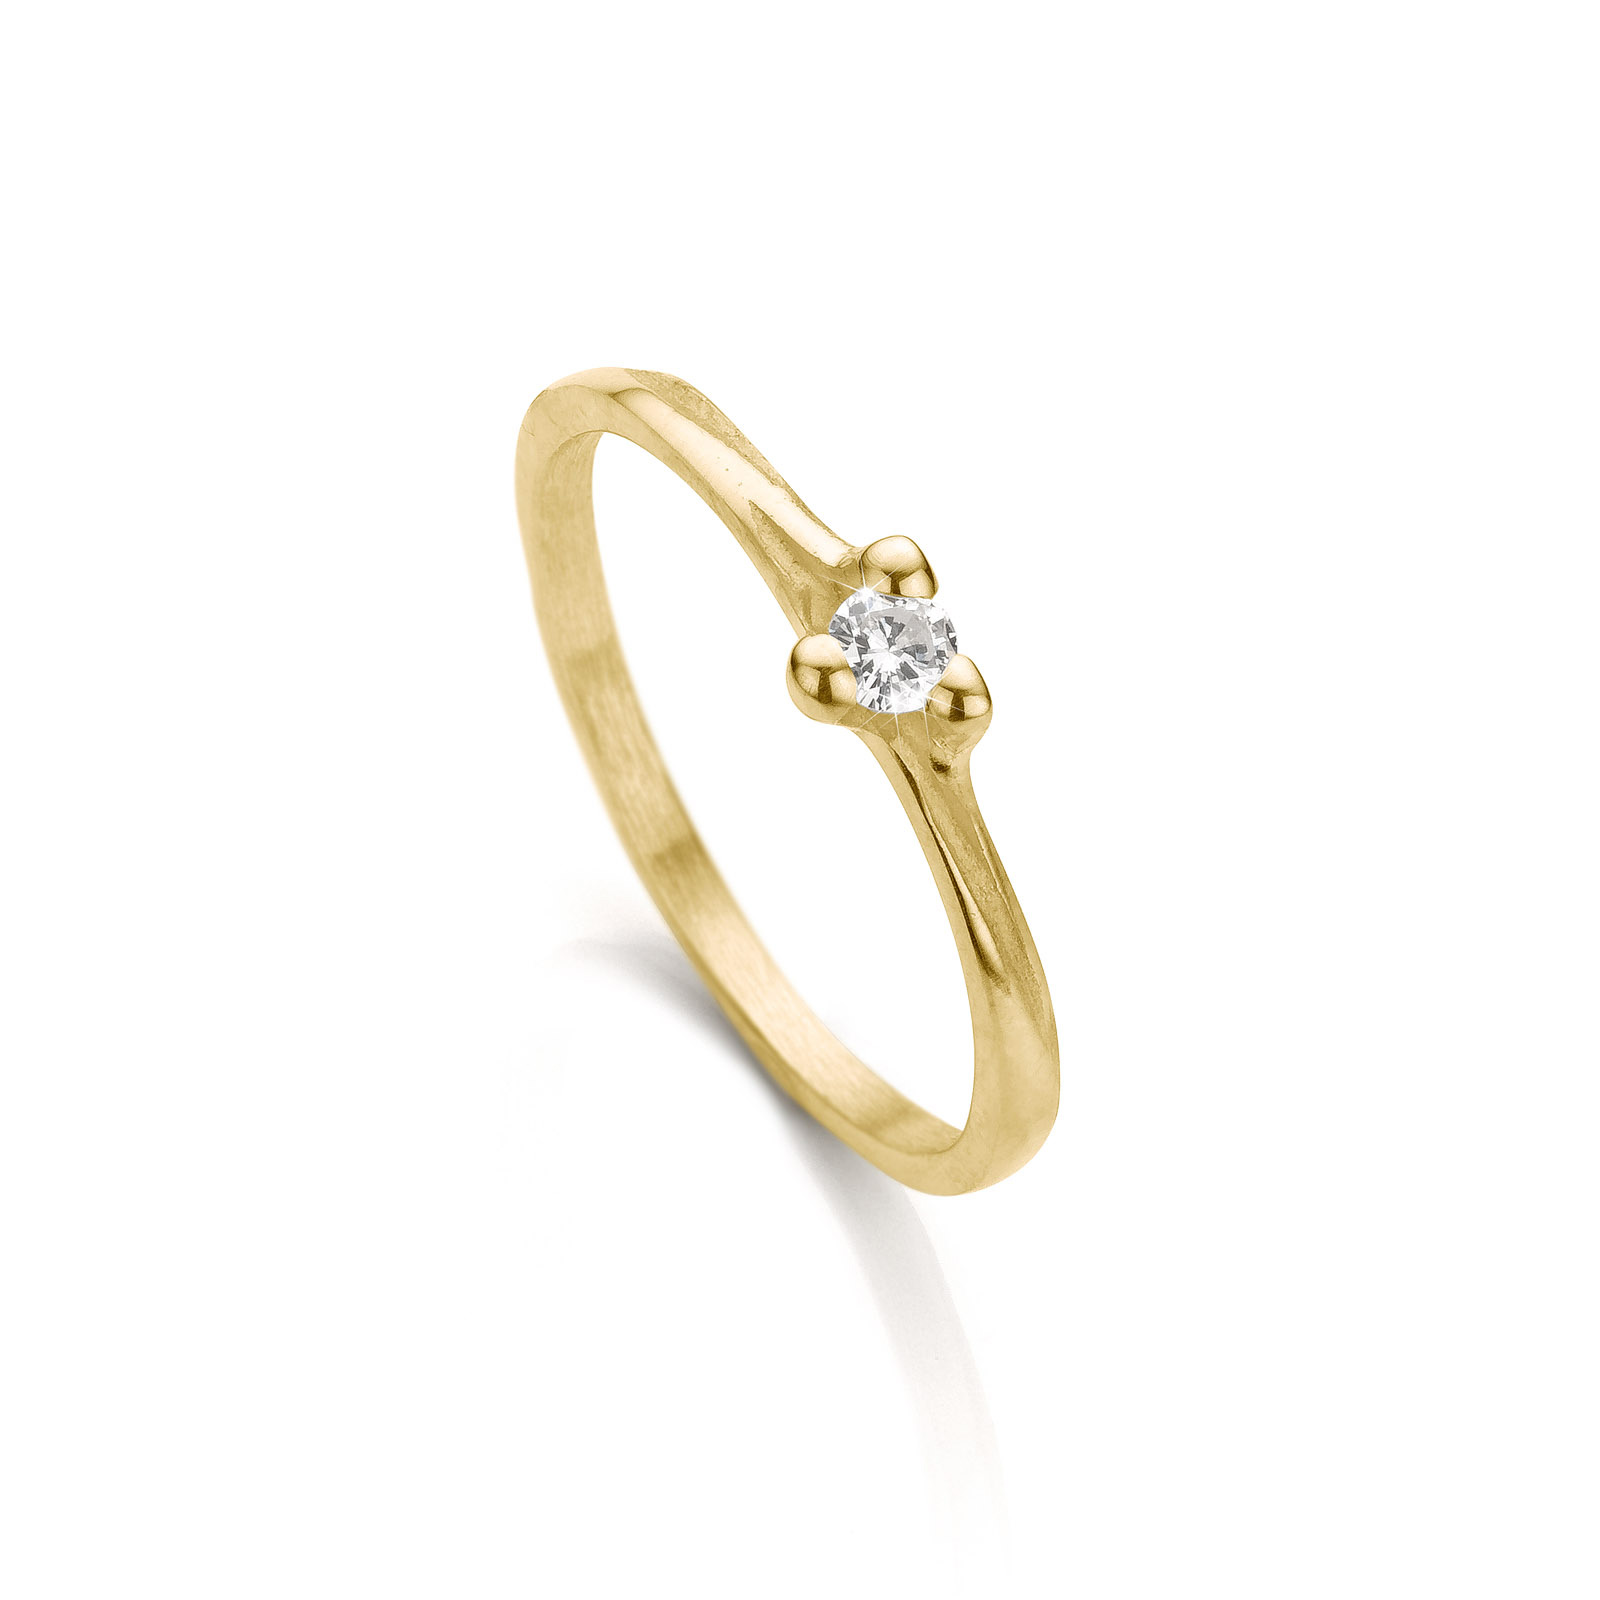 N° 059 Handmade white gold engagement ring - Ines Bouwen Jewelry